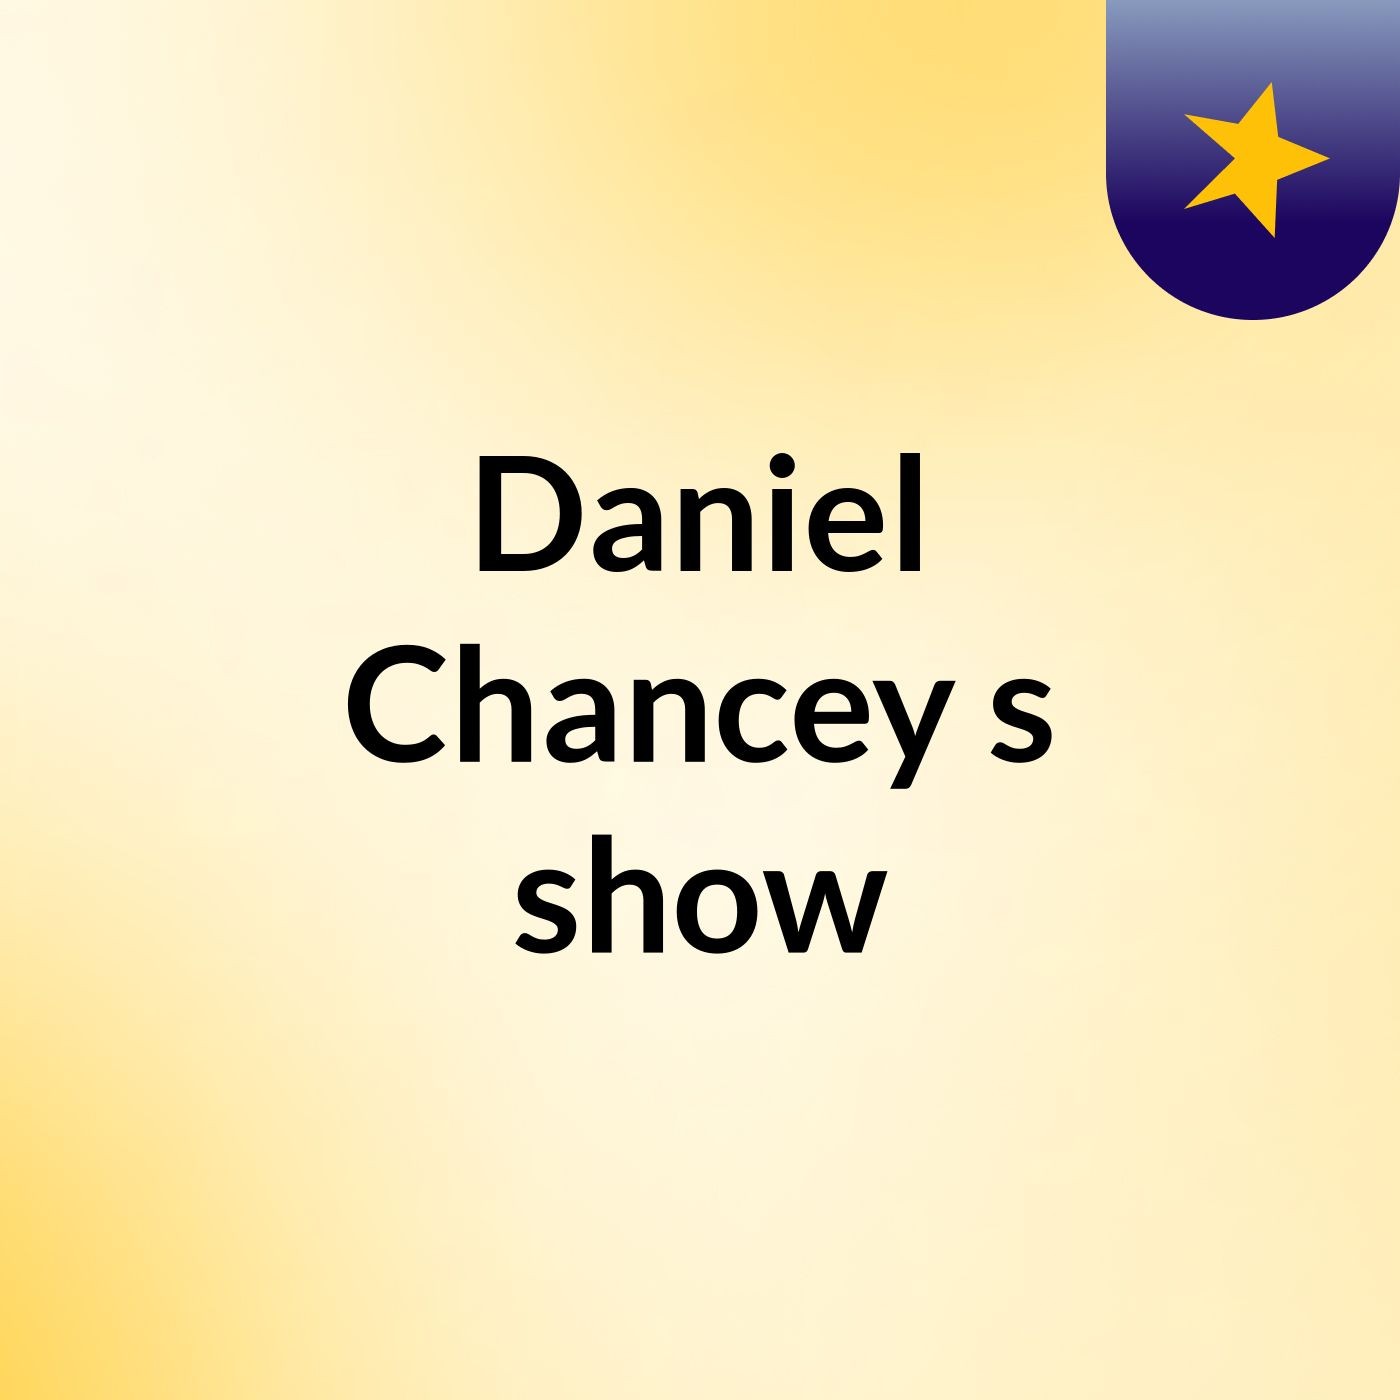 Daniel Chancey's show